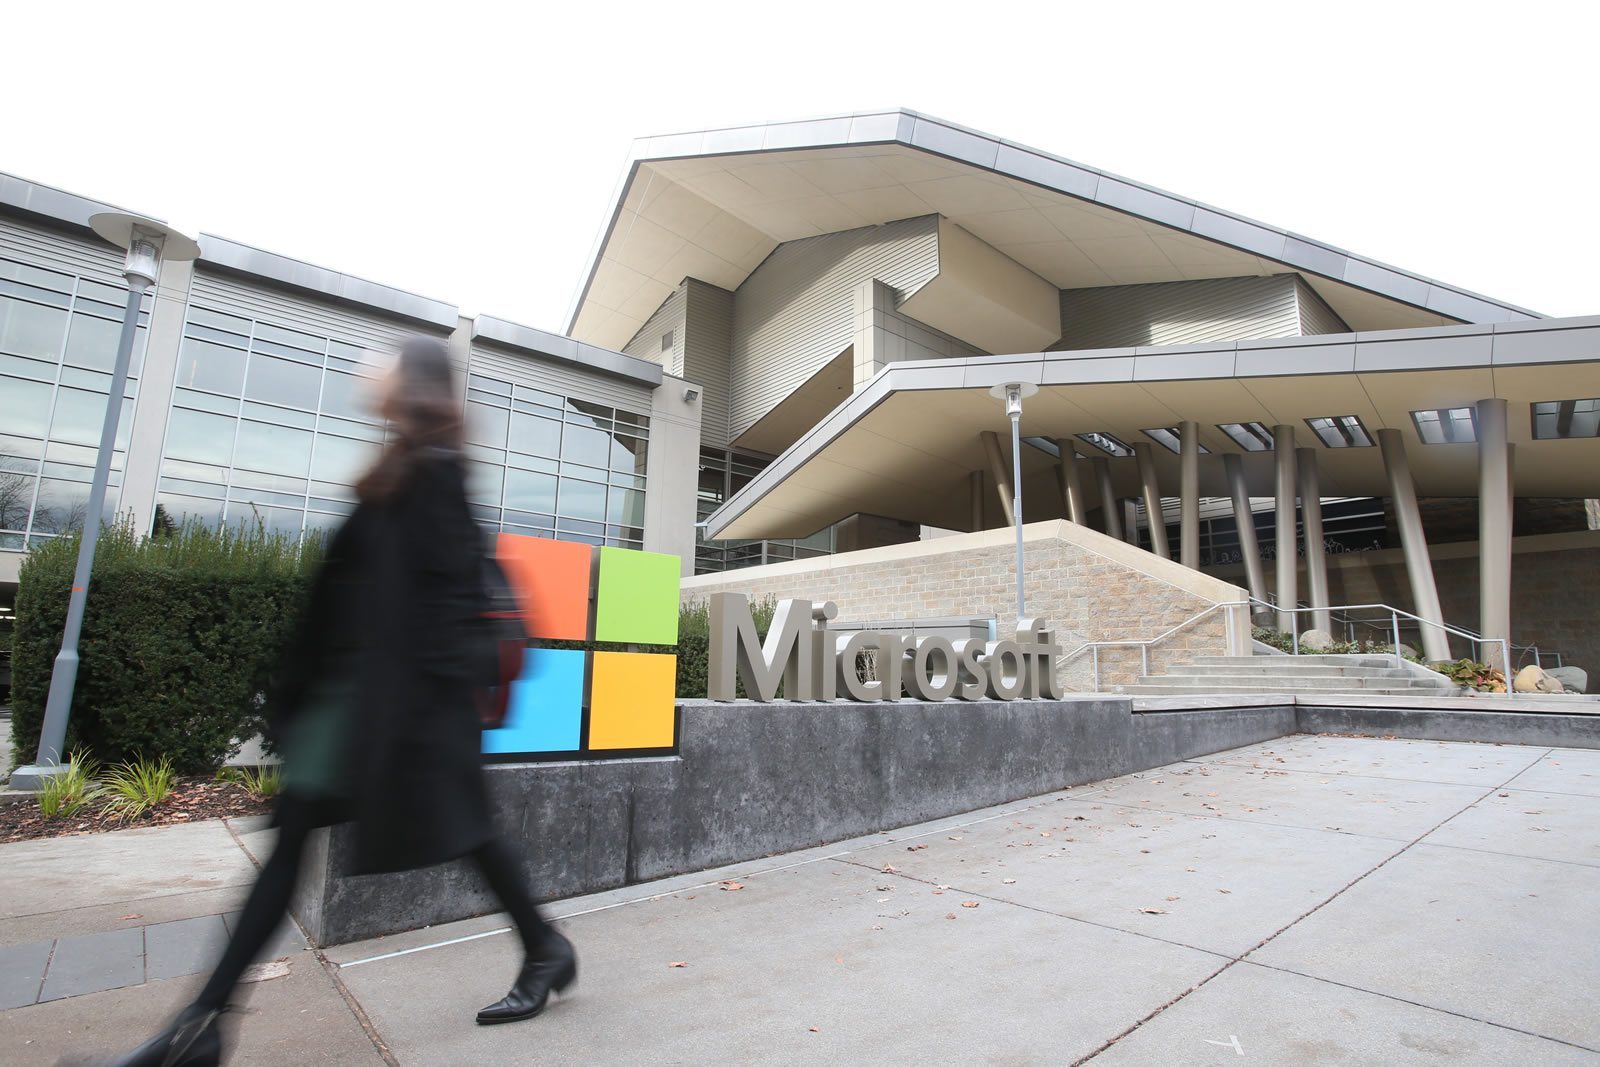 微软希望在 2030 年达成「零废弃物」 的目标